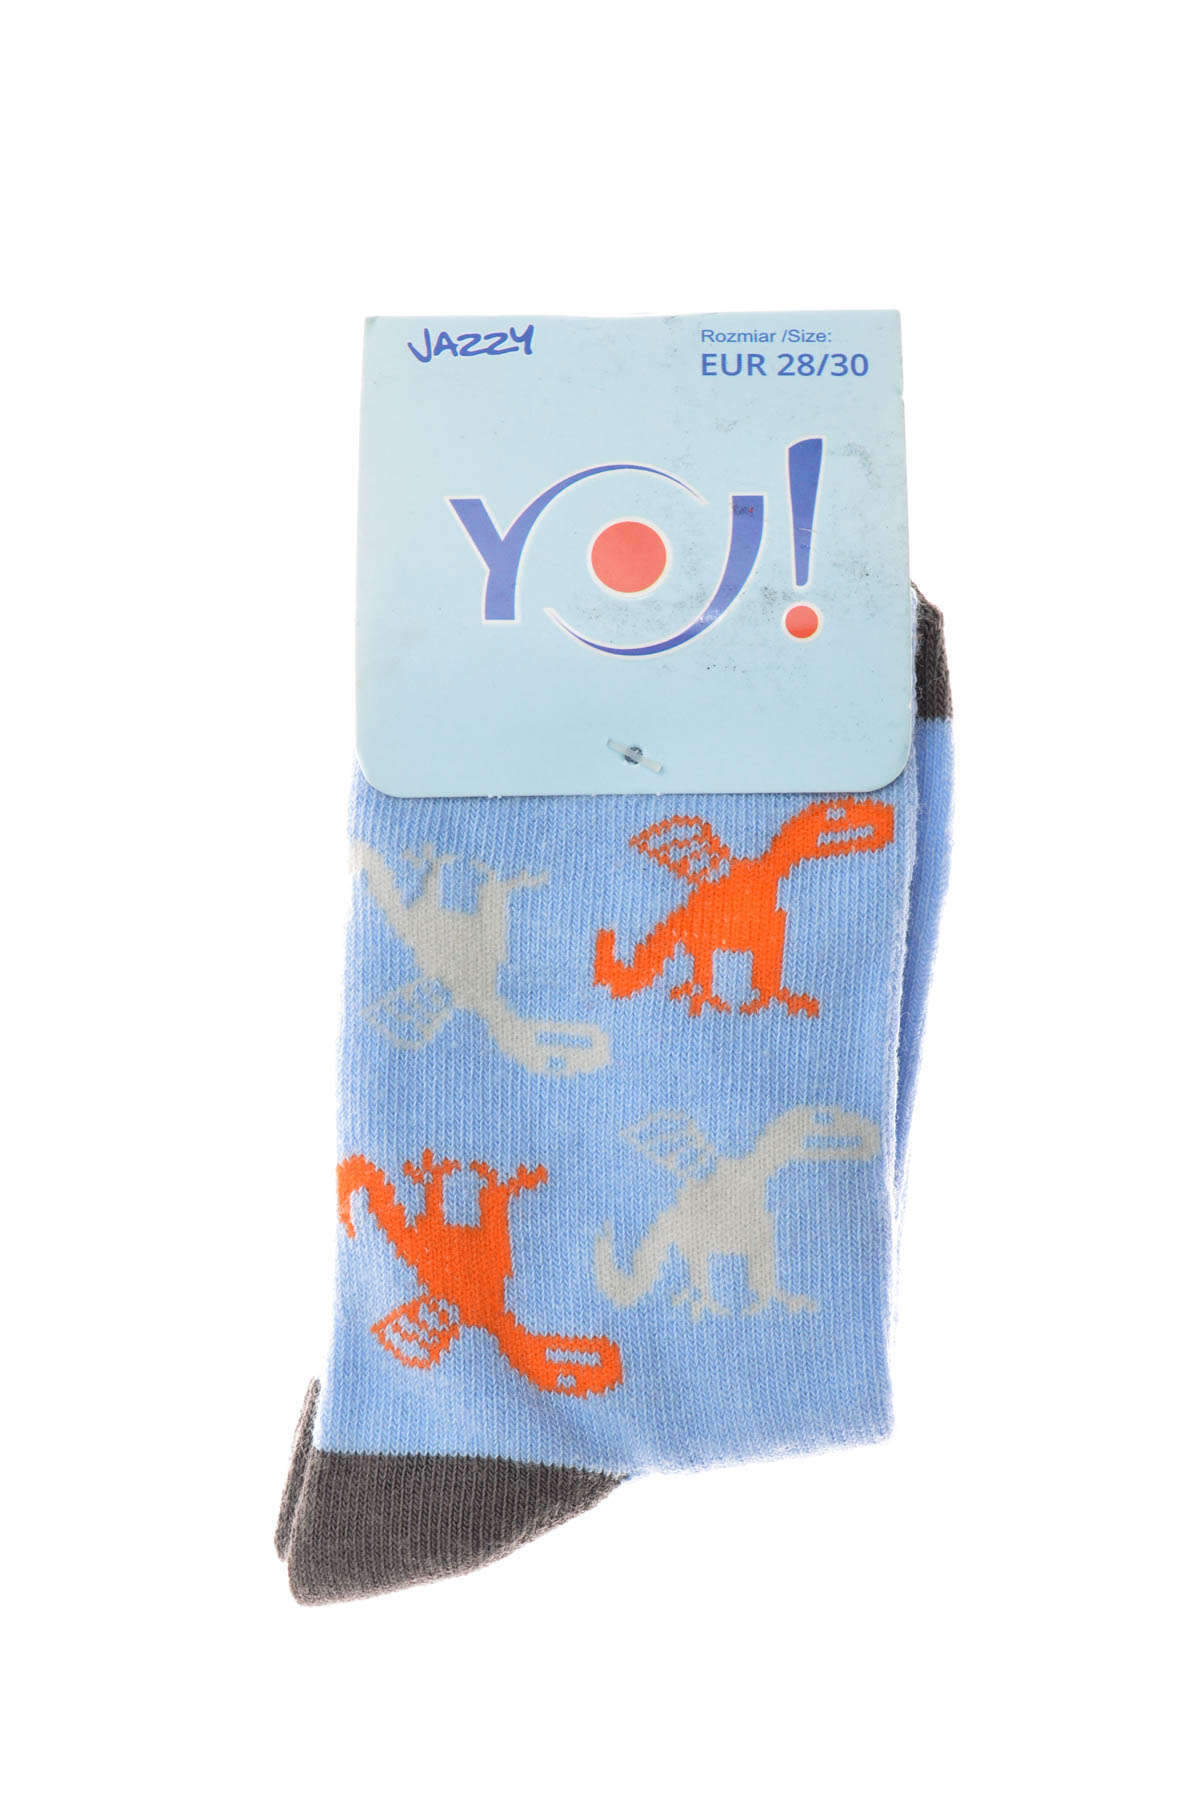 Kids' Socks - YO! - 1